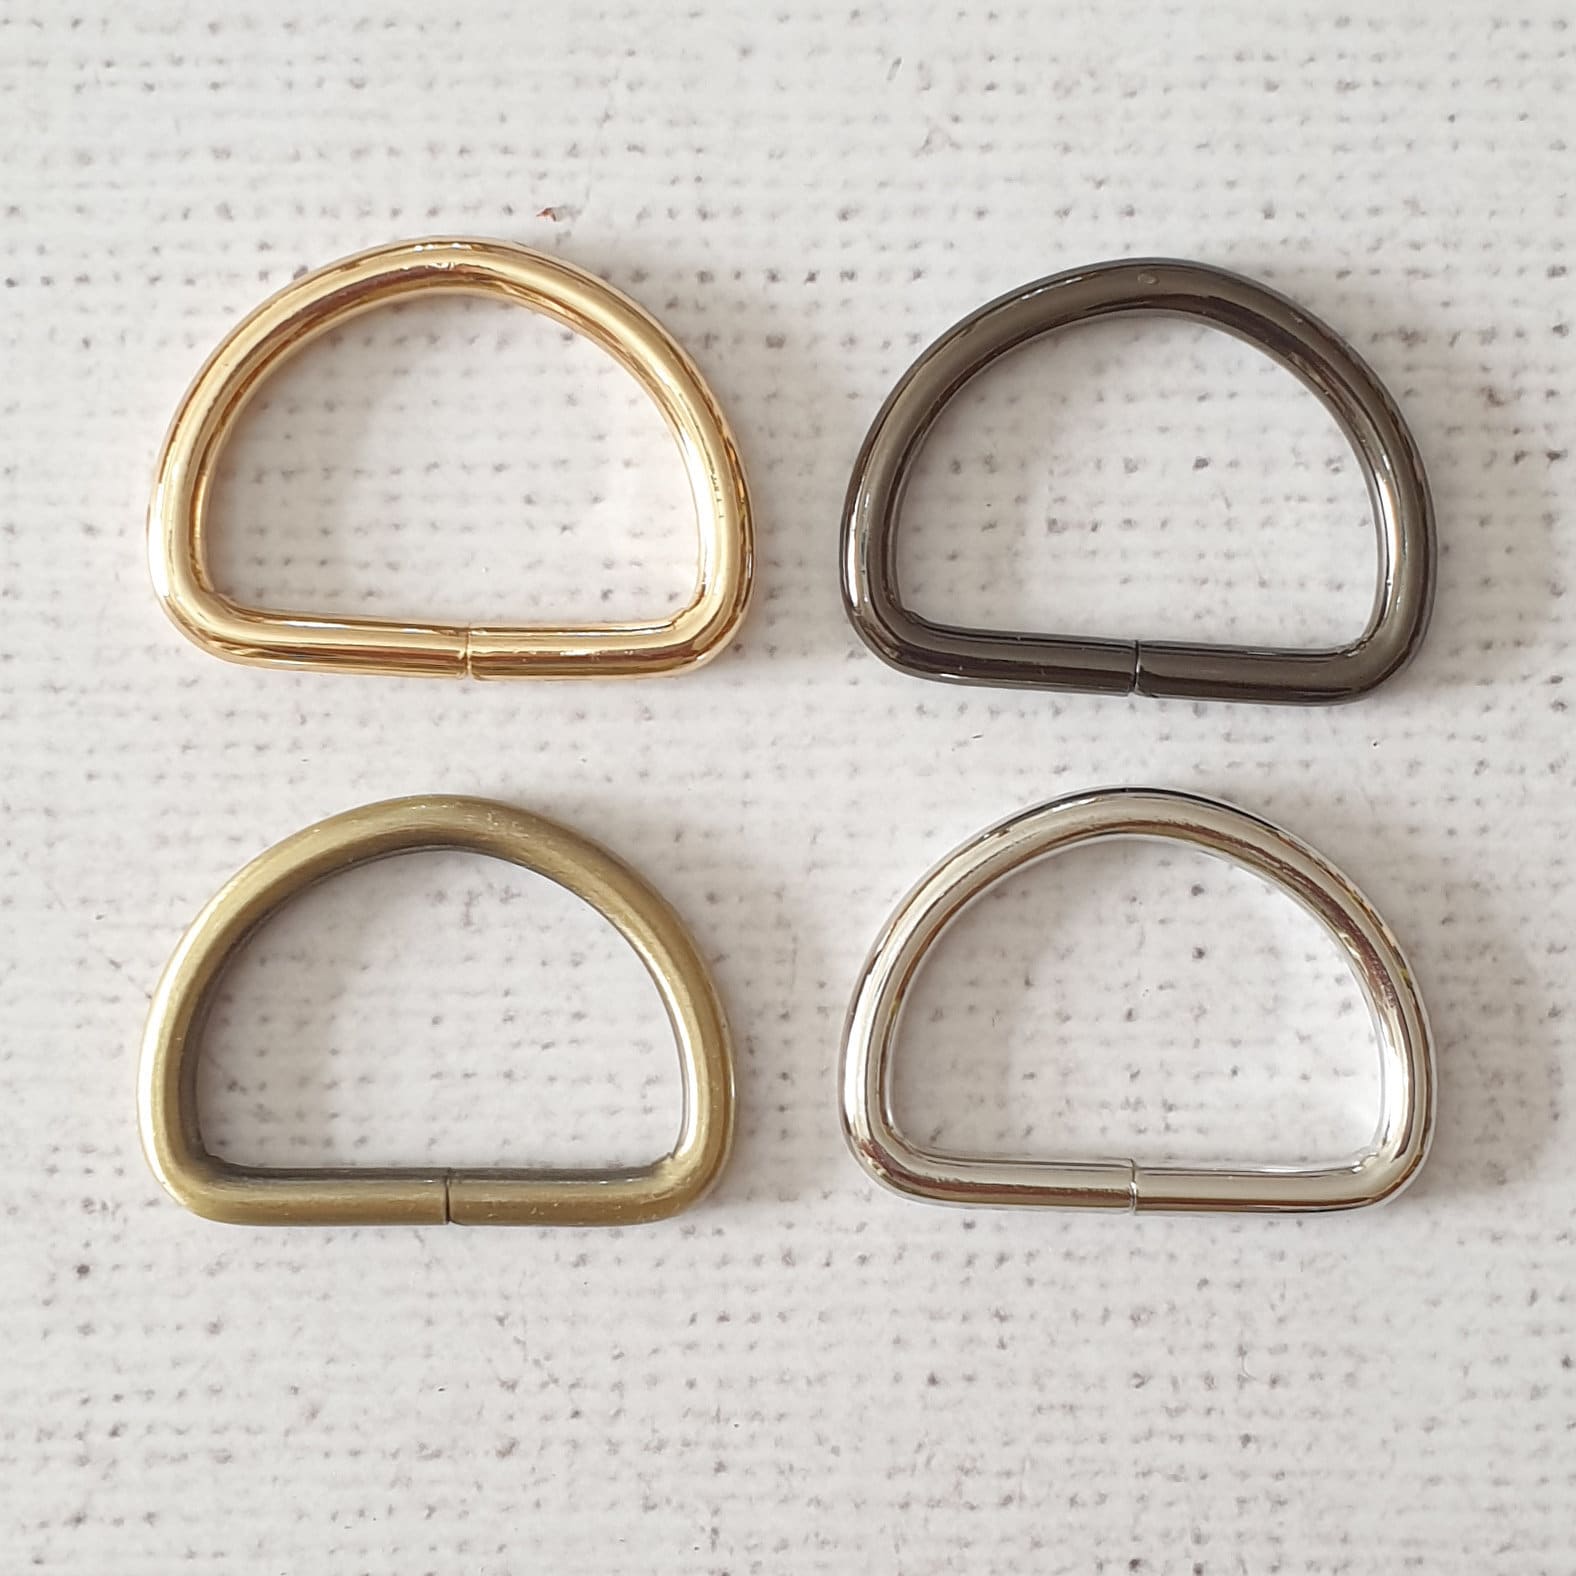 10x Gold D Rings, 1 Inch Gold D Rings, Bag Making Supplies, Bag Handle D  Rings, Gold Fittings, UK Sewing Supplies, Metal D Ring, Bag Repairs 